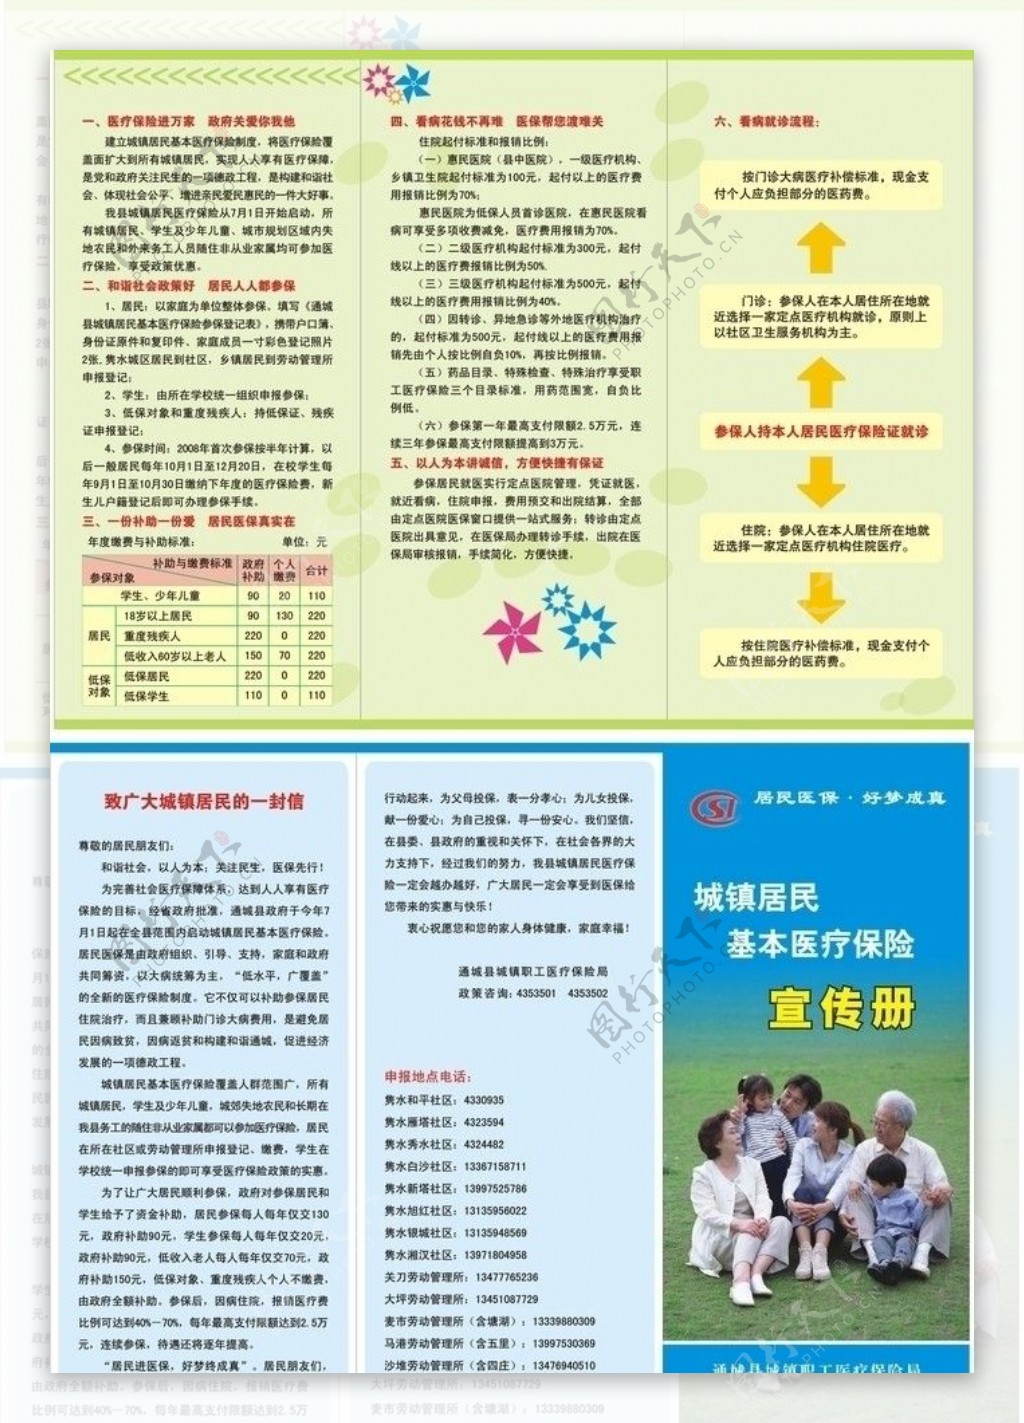 城镇居民医疗保险手册图片